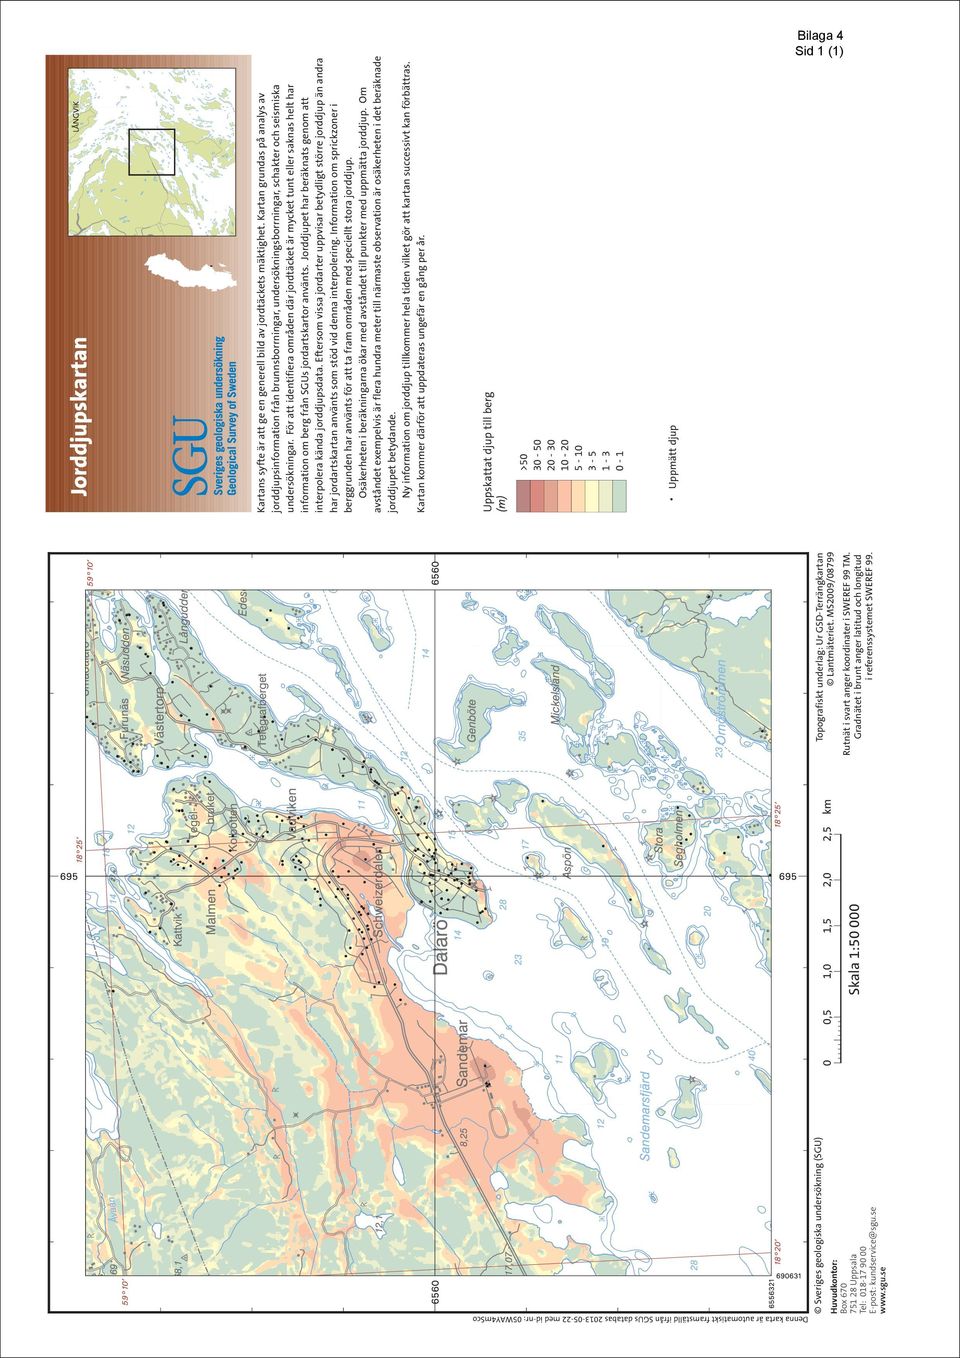 För att identifiera områden där jordtäcket är mycket tunt eller saknas helt har information om berg från SGUs jordartskartor använts.